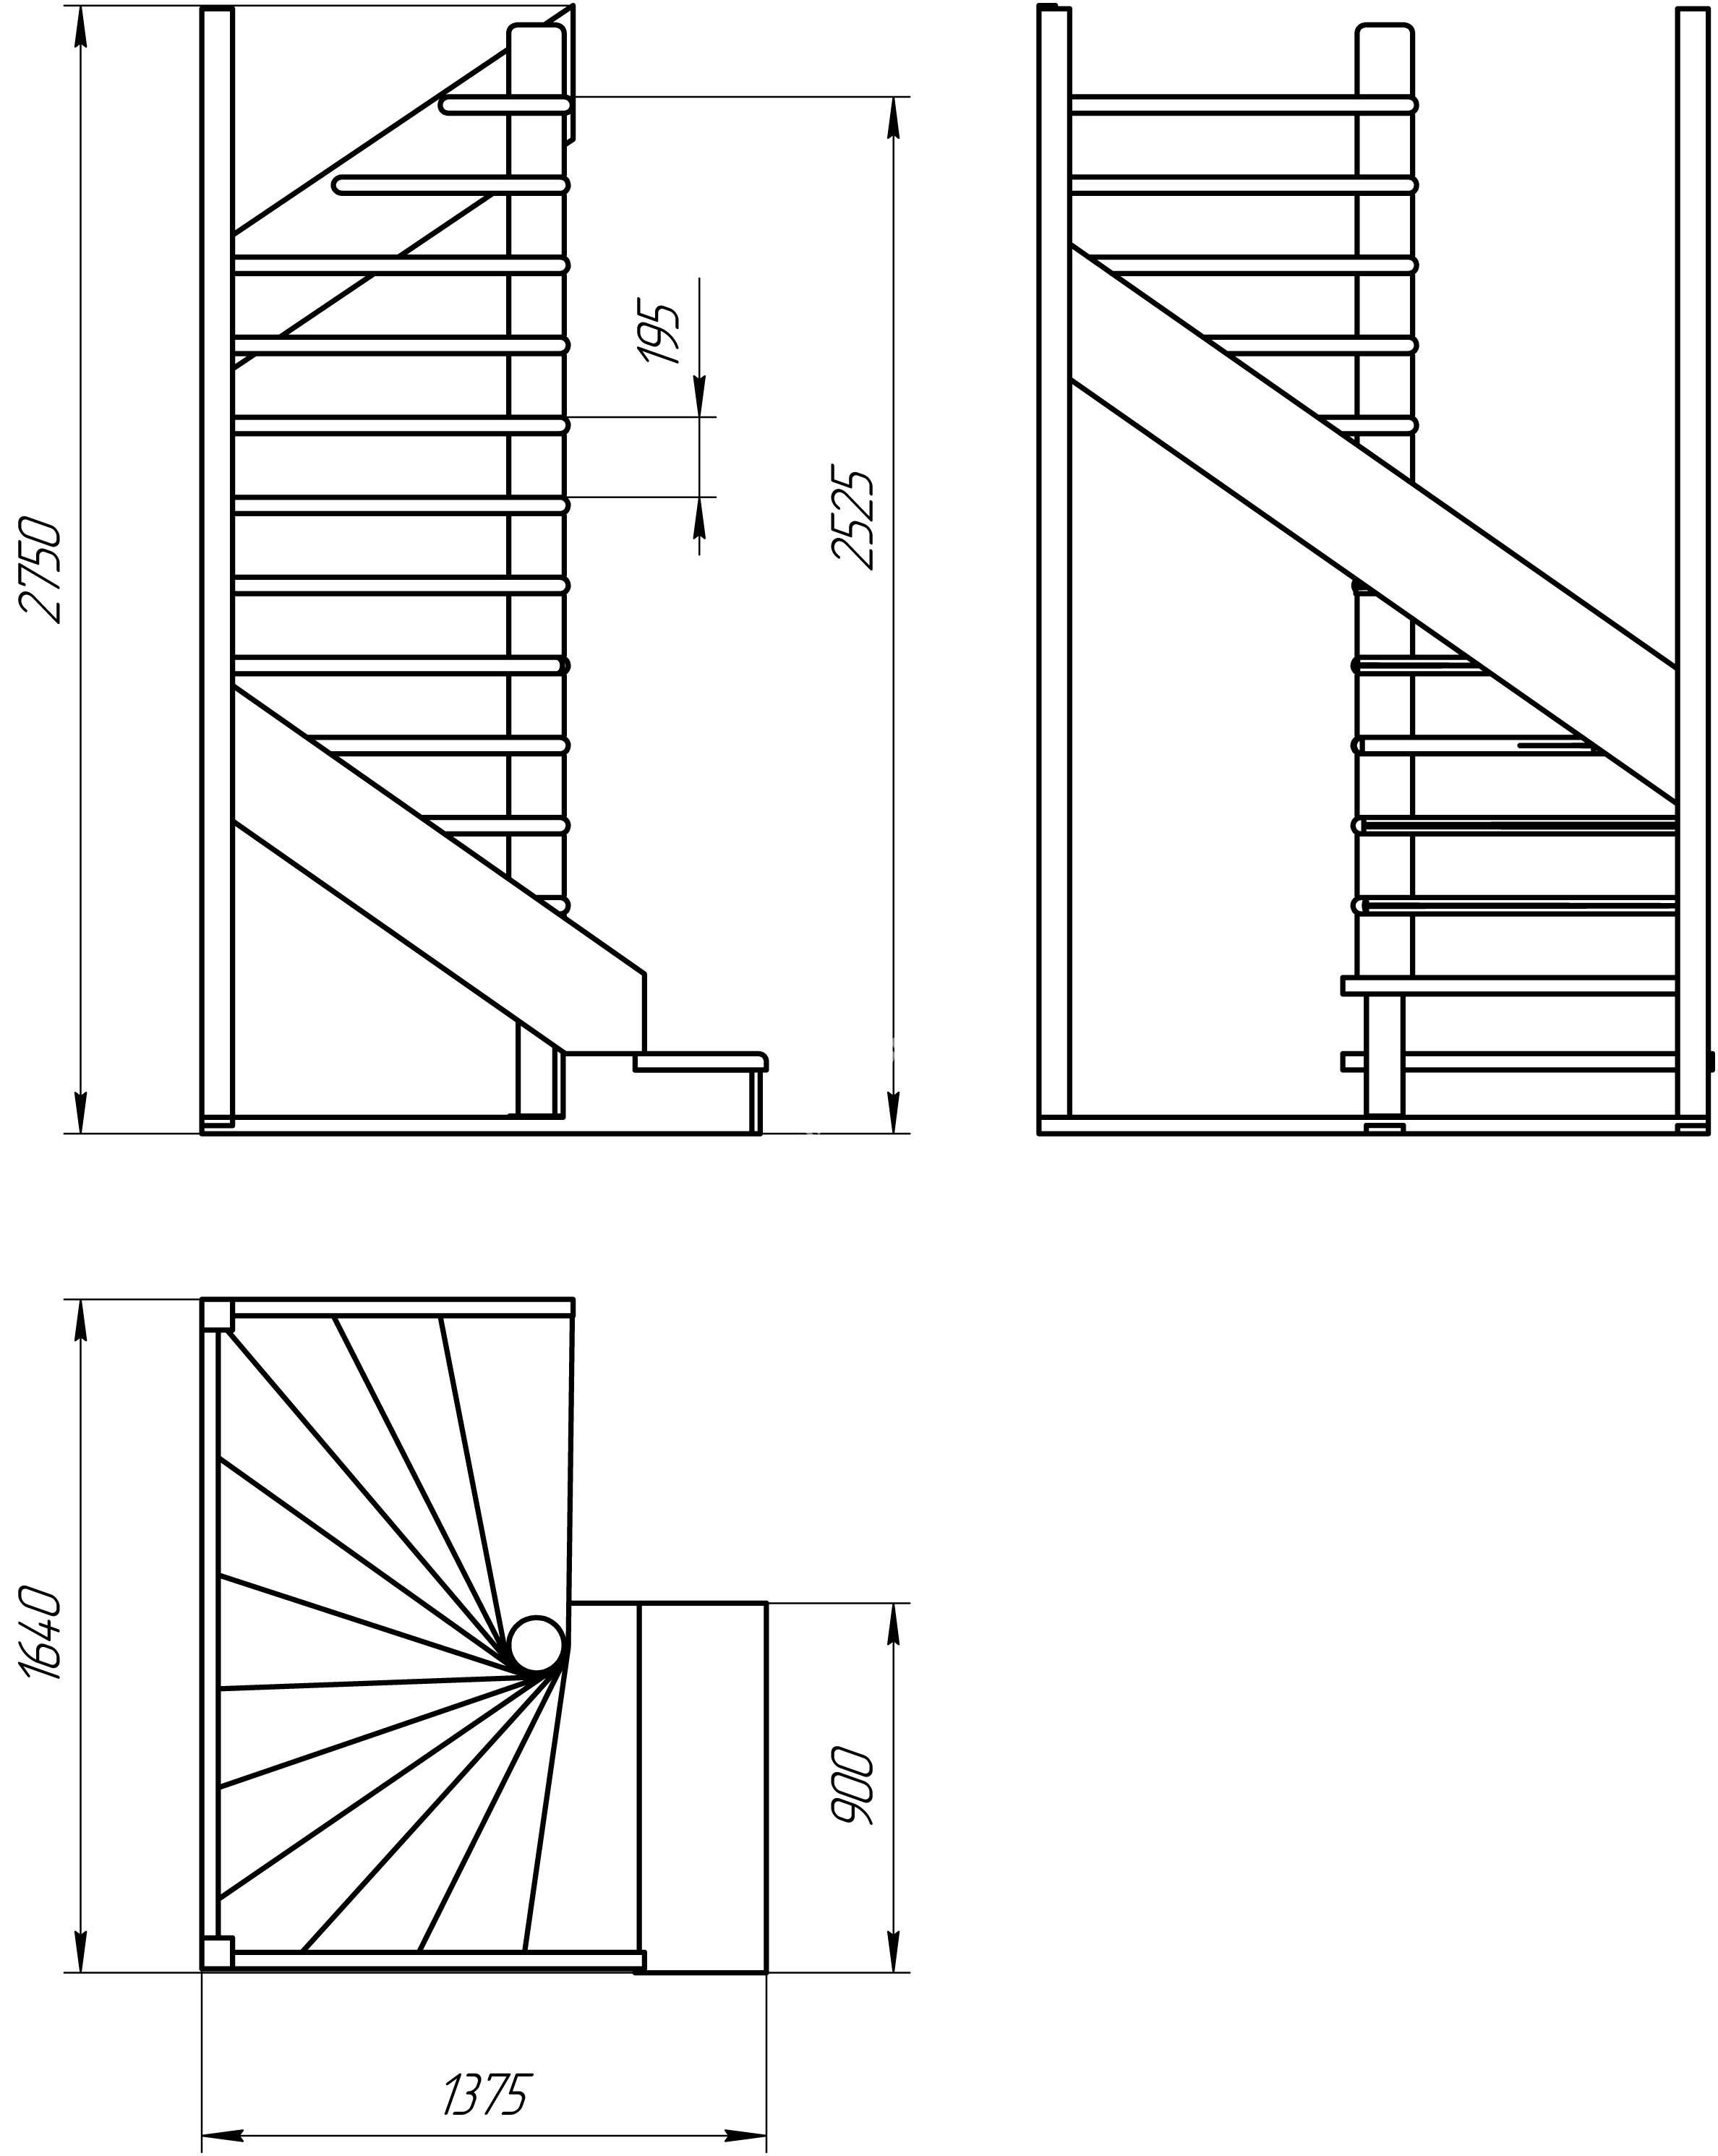 Лестницы на второй этаж в частном доме своими руками. схема конструкции лестницы